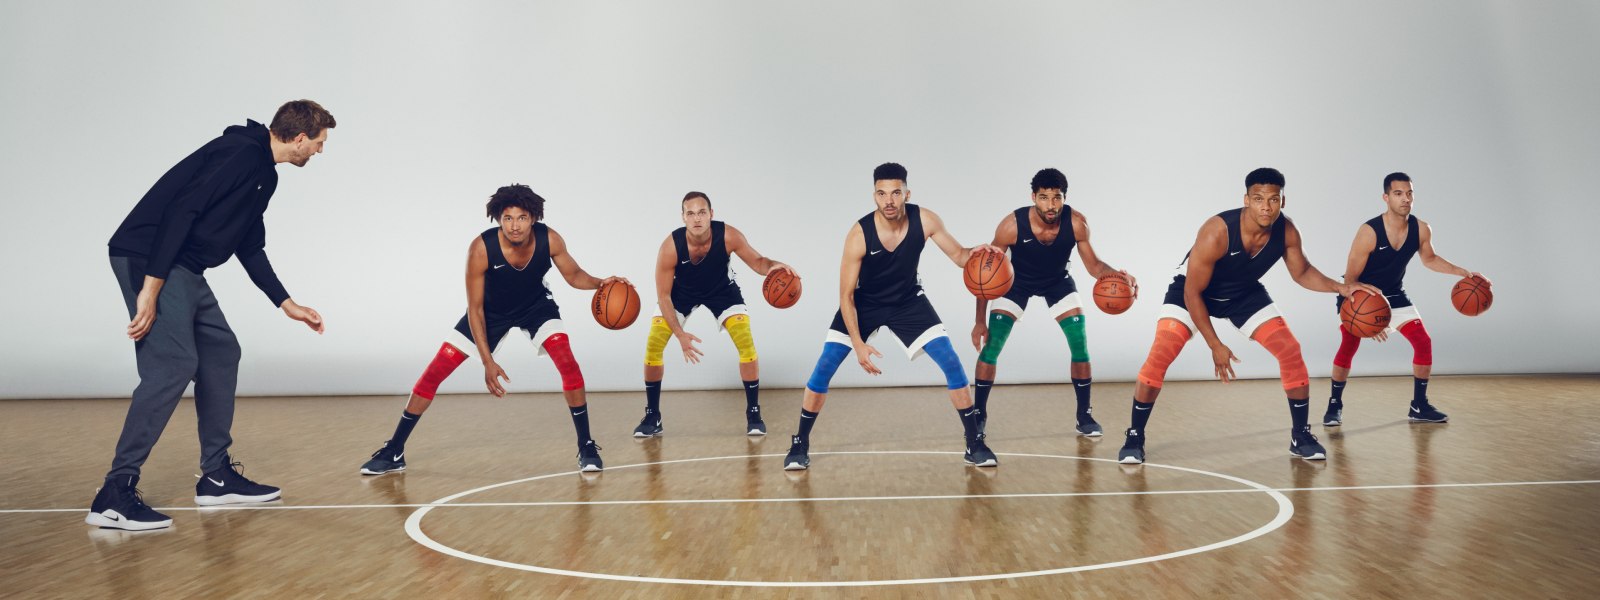 Dirk Nowitzki coacht zes basketbalspelers met kleurrijke kniebands